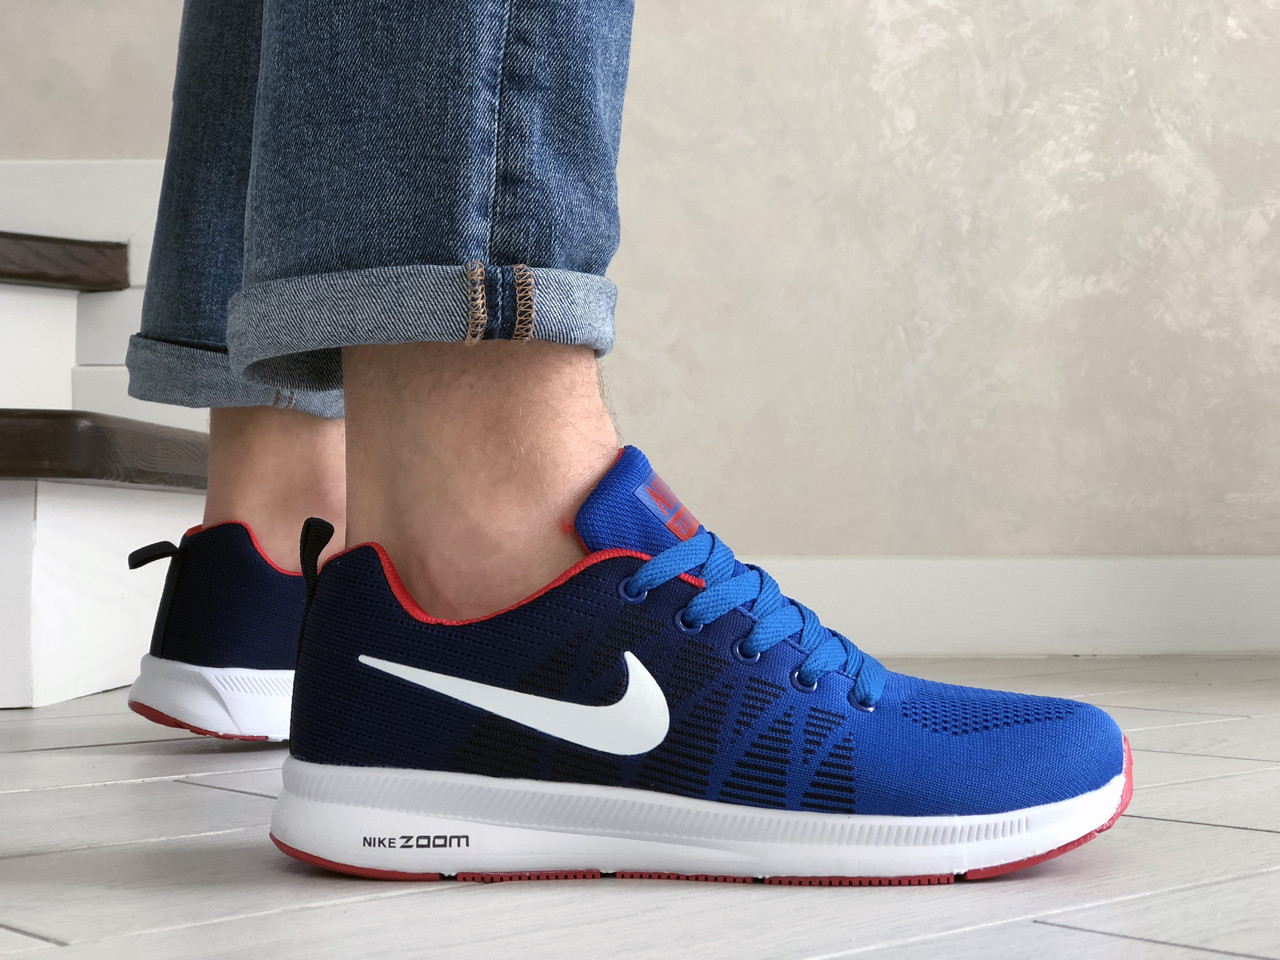 

Мужские кроссовки Nike Найк Zoom, сетка, пена, синие с белым. 42, Синий